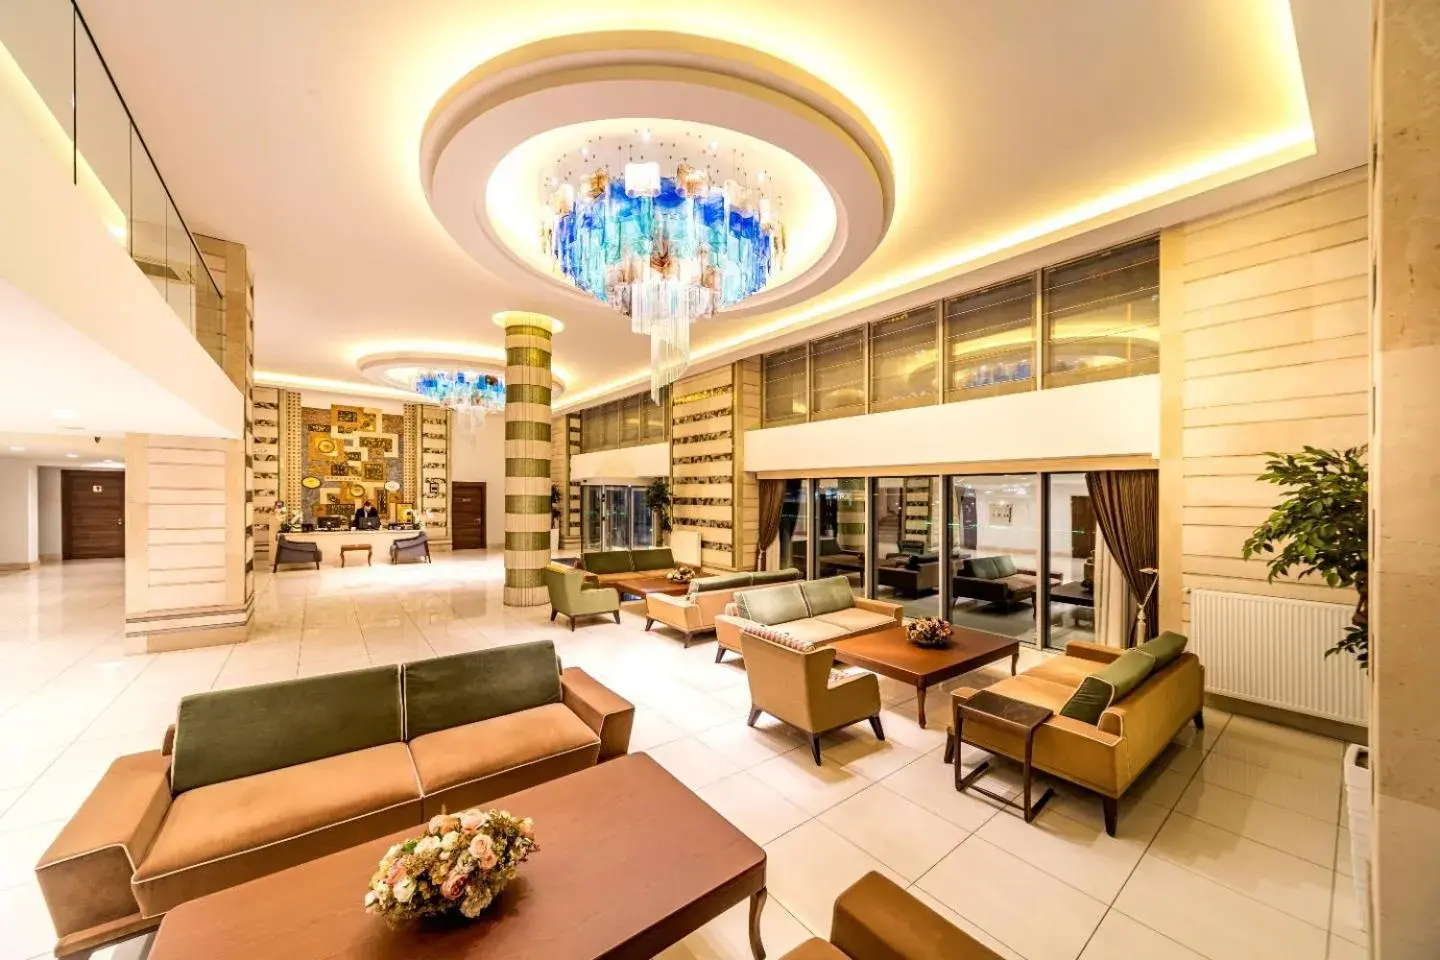 Lobby or reception, Lobby/Reception in Rox Hotel Istanbul